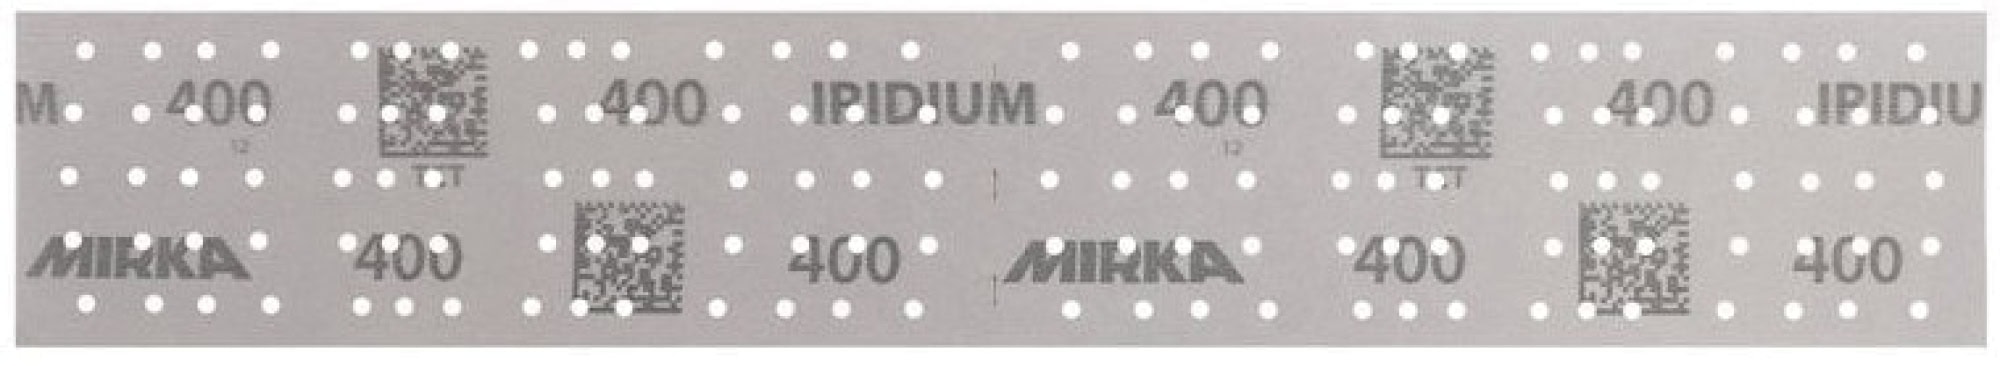 Mirka® Iridium® 246B205012, 70 mm x 400 mm, 2 mal in 70 x 198 mm Stücke perforiert, P120, Multilochung, Kletthaftend, Schleifstreifen mit Keramik- und Aluminiumkorn